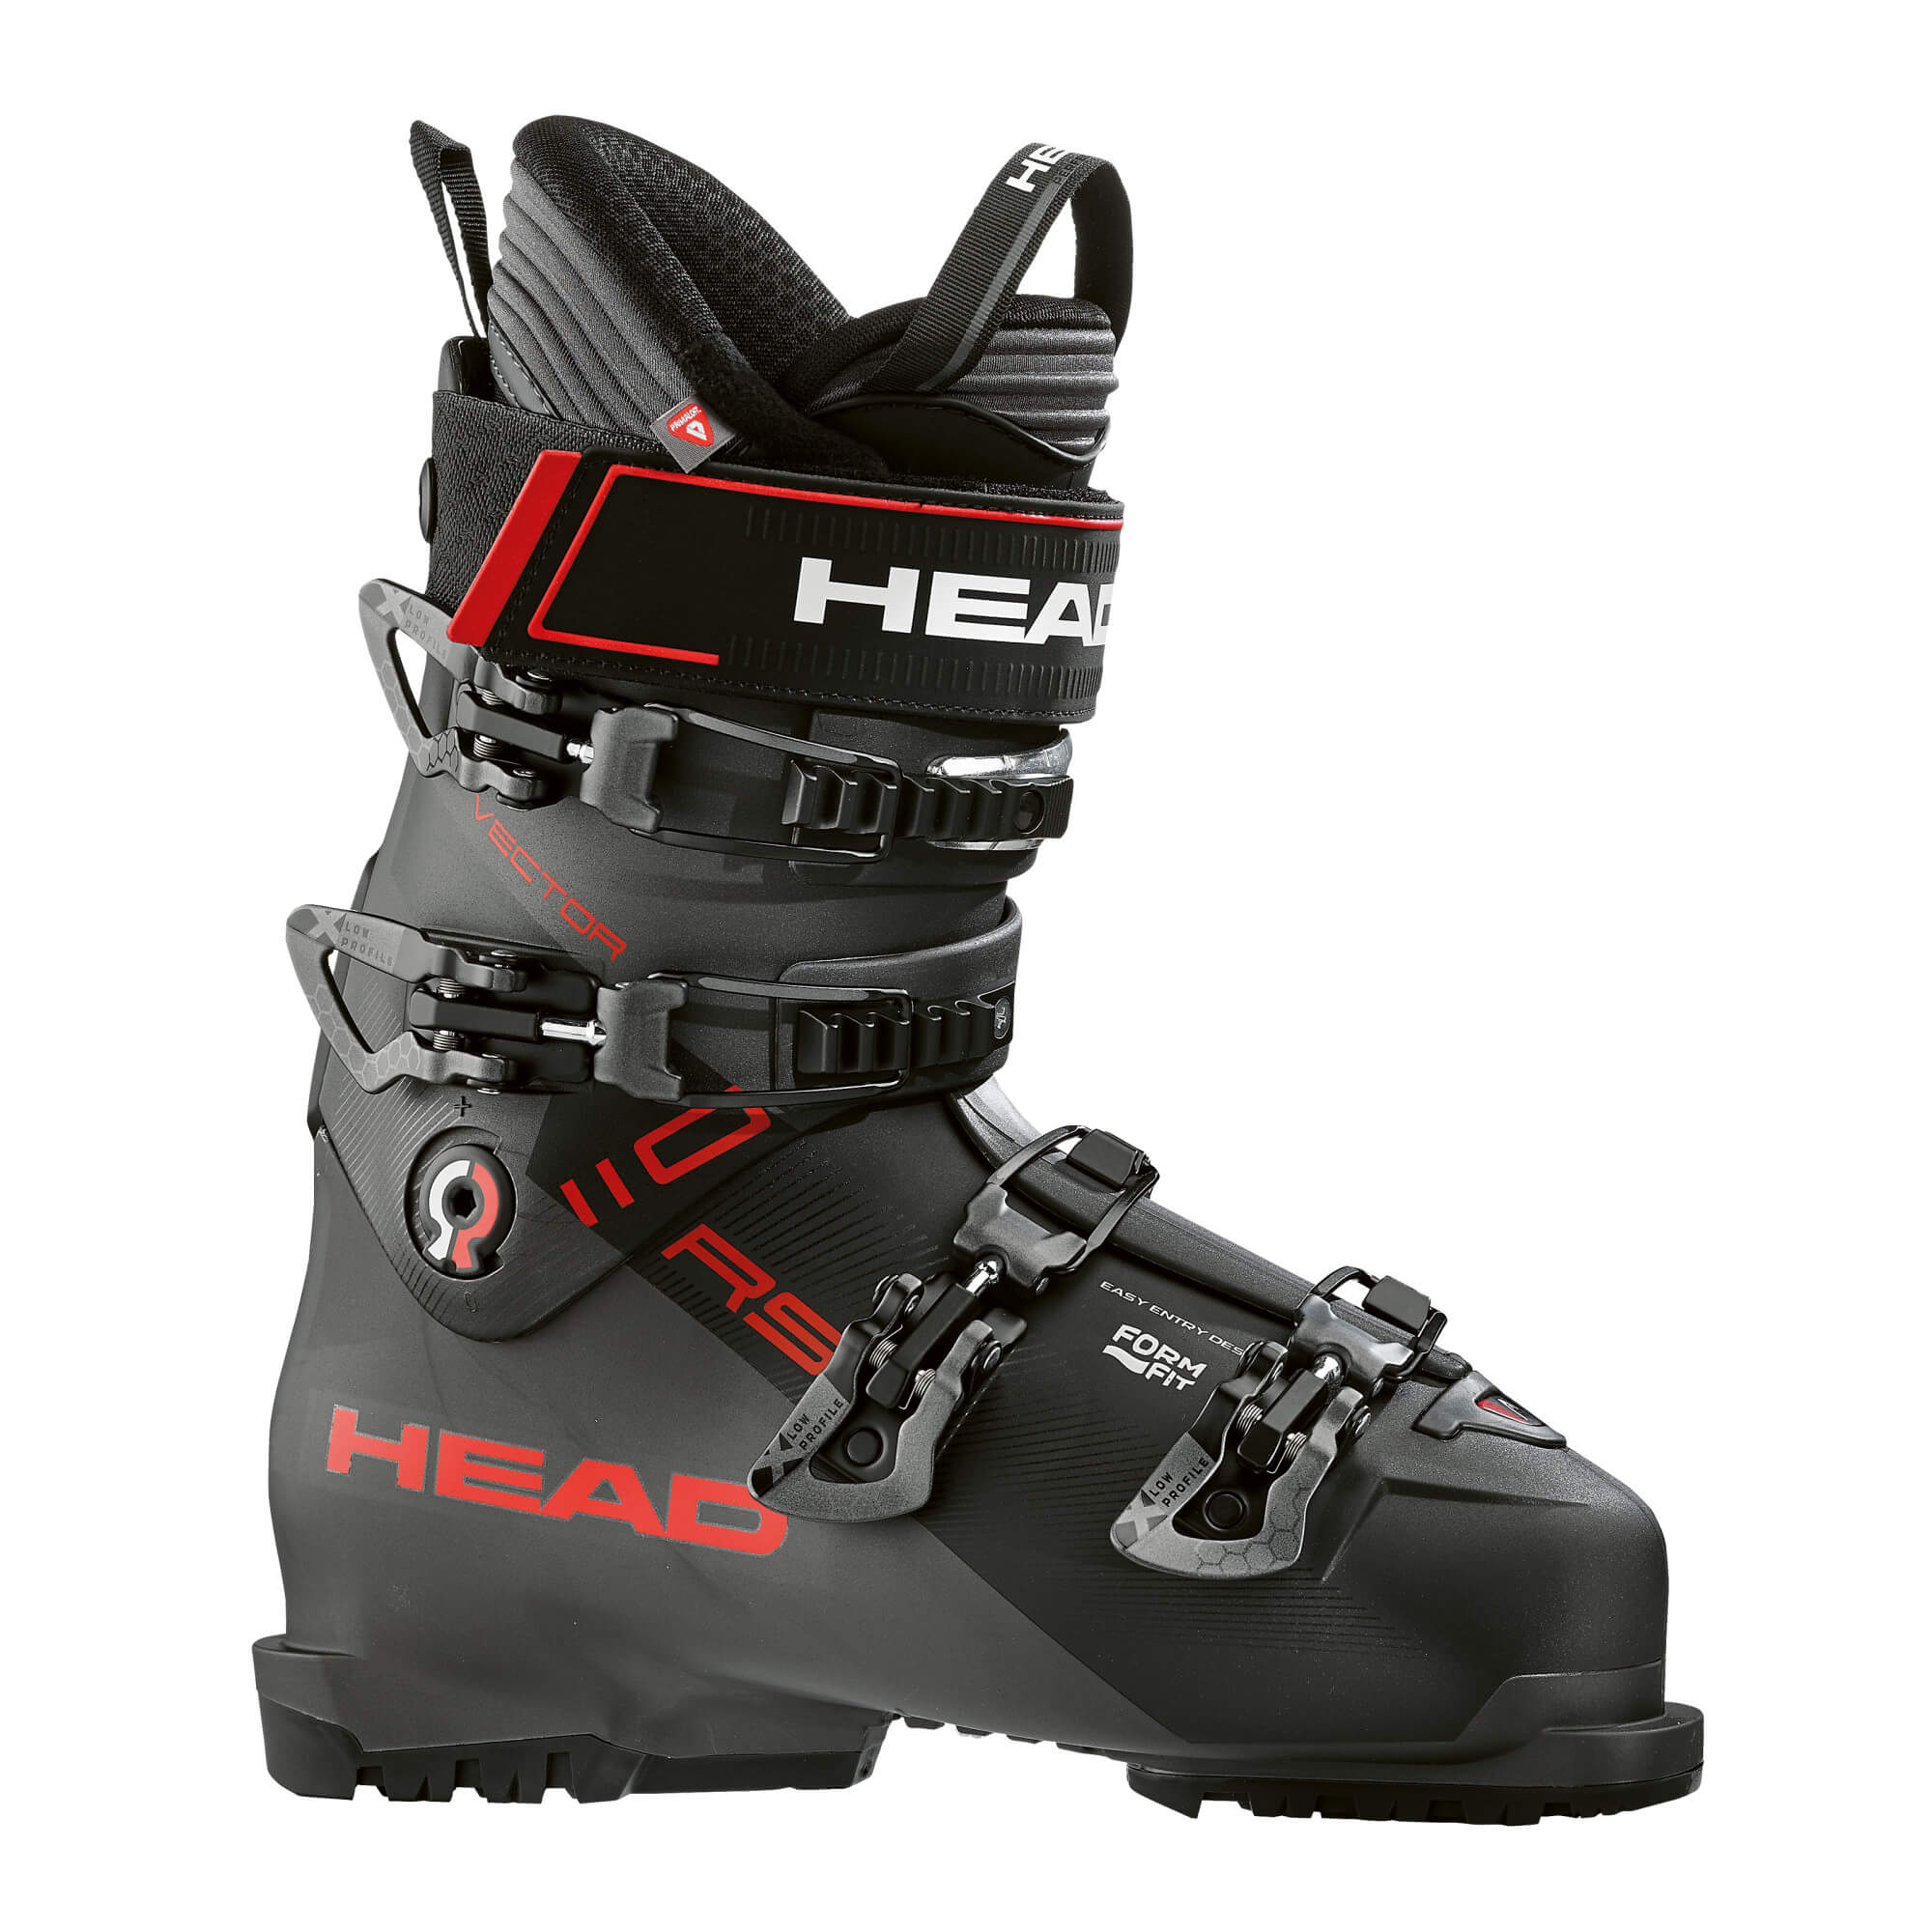 Горнолыжные ботинки Head Vector RS 110 2020, anthracite/black, 26.5